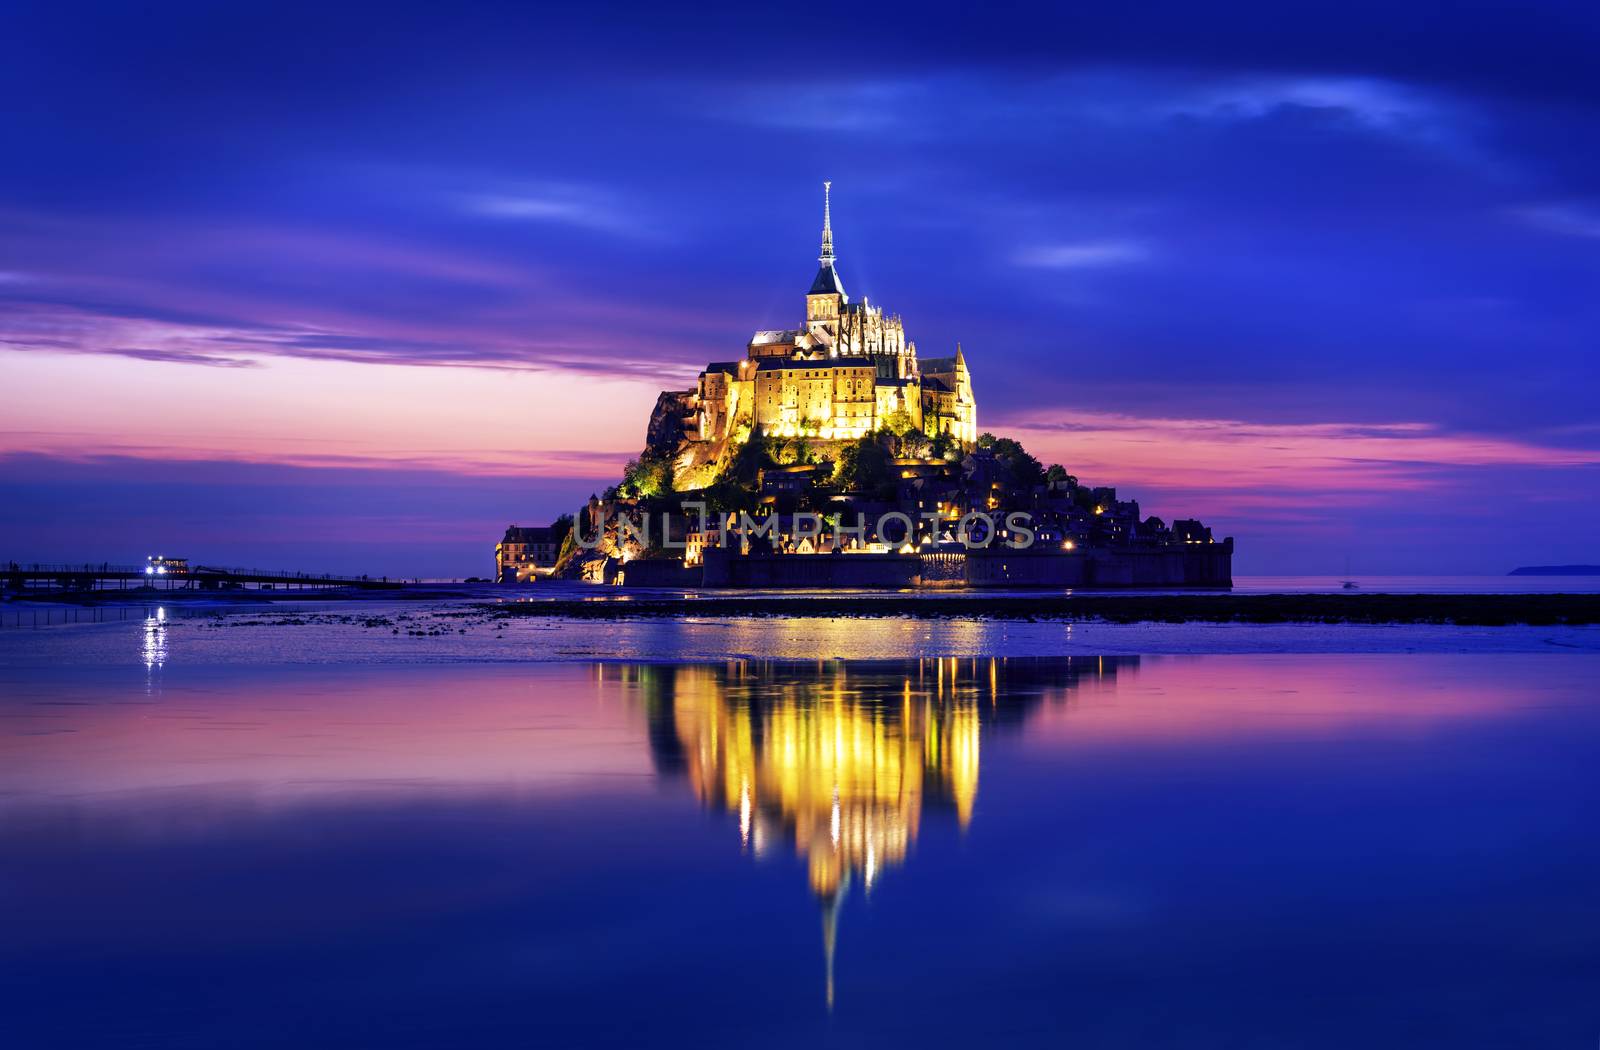 Le Mont-Saint-Michel in the twilight